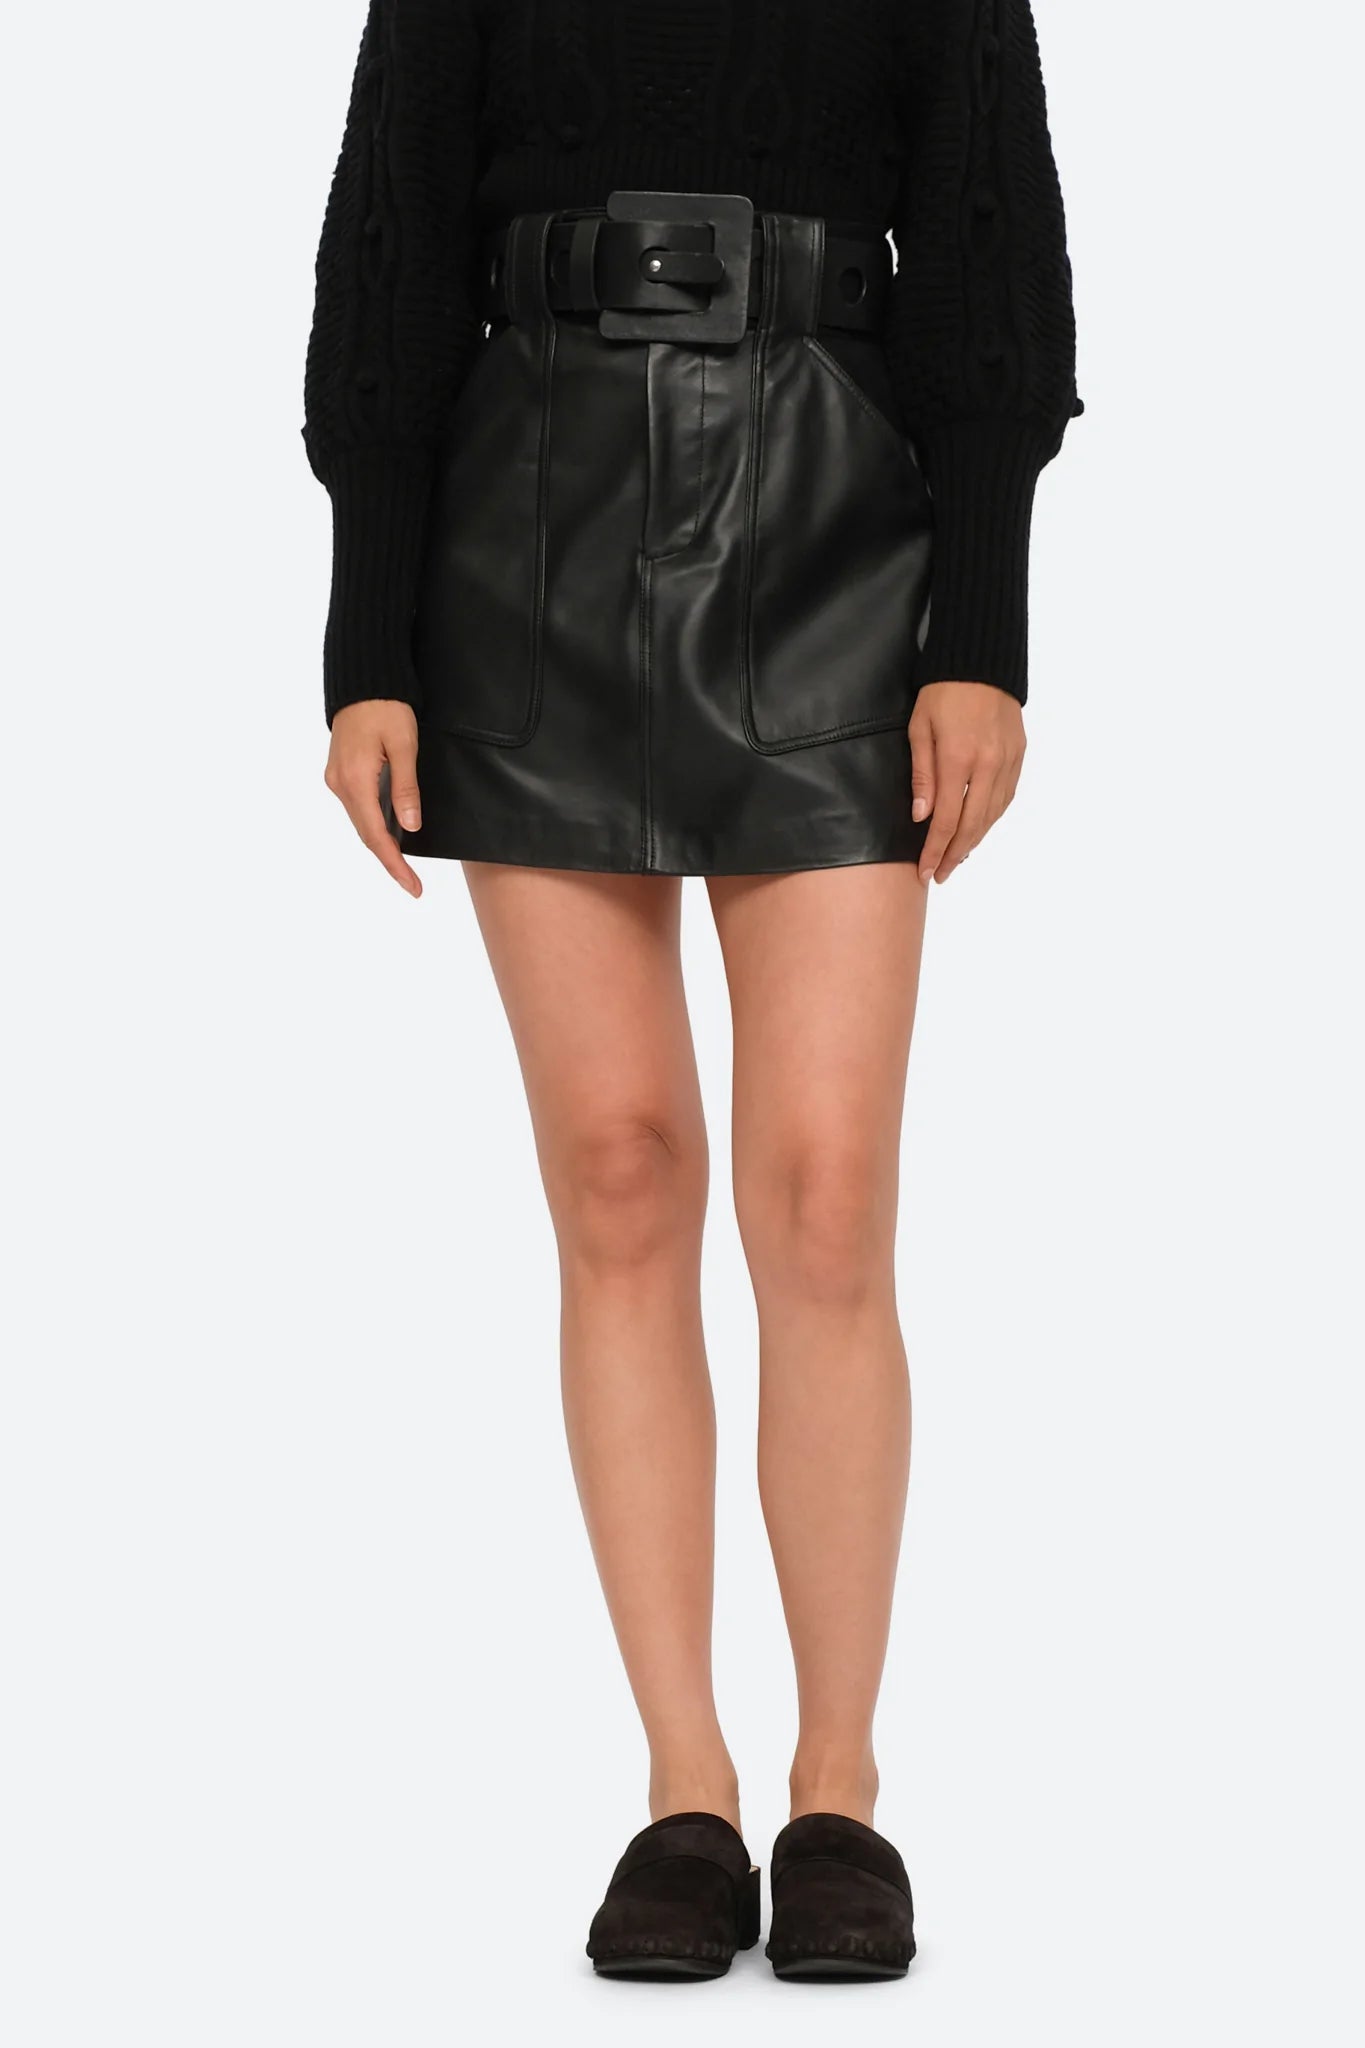 SEA Ayden Leather Mini Skirt